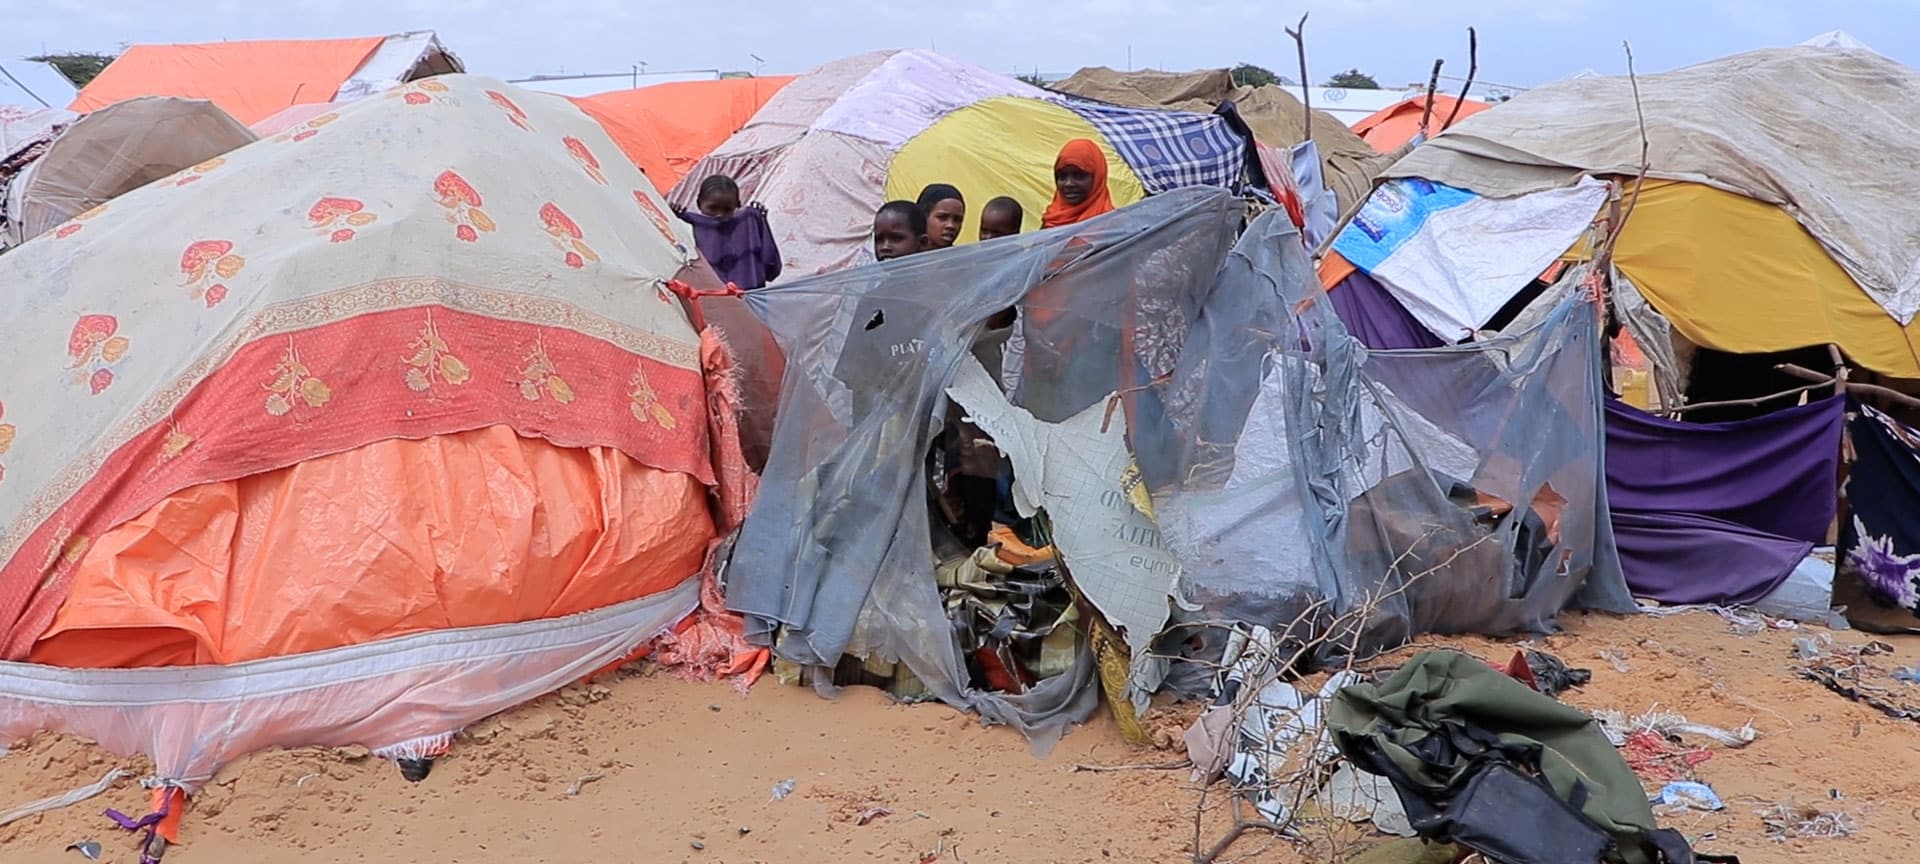 Telt i en flyktningleir dekket av tepper. Flere barn står innimellom teltene. Foto: Sunshine Media